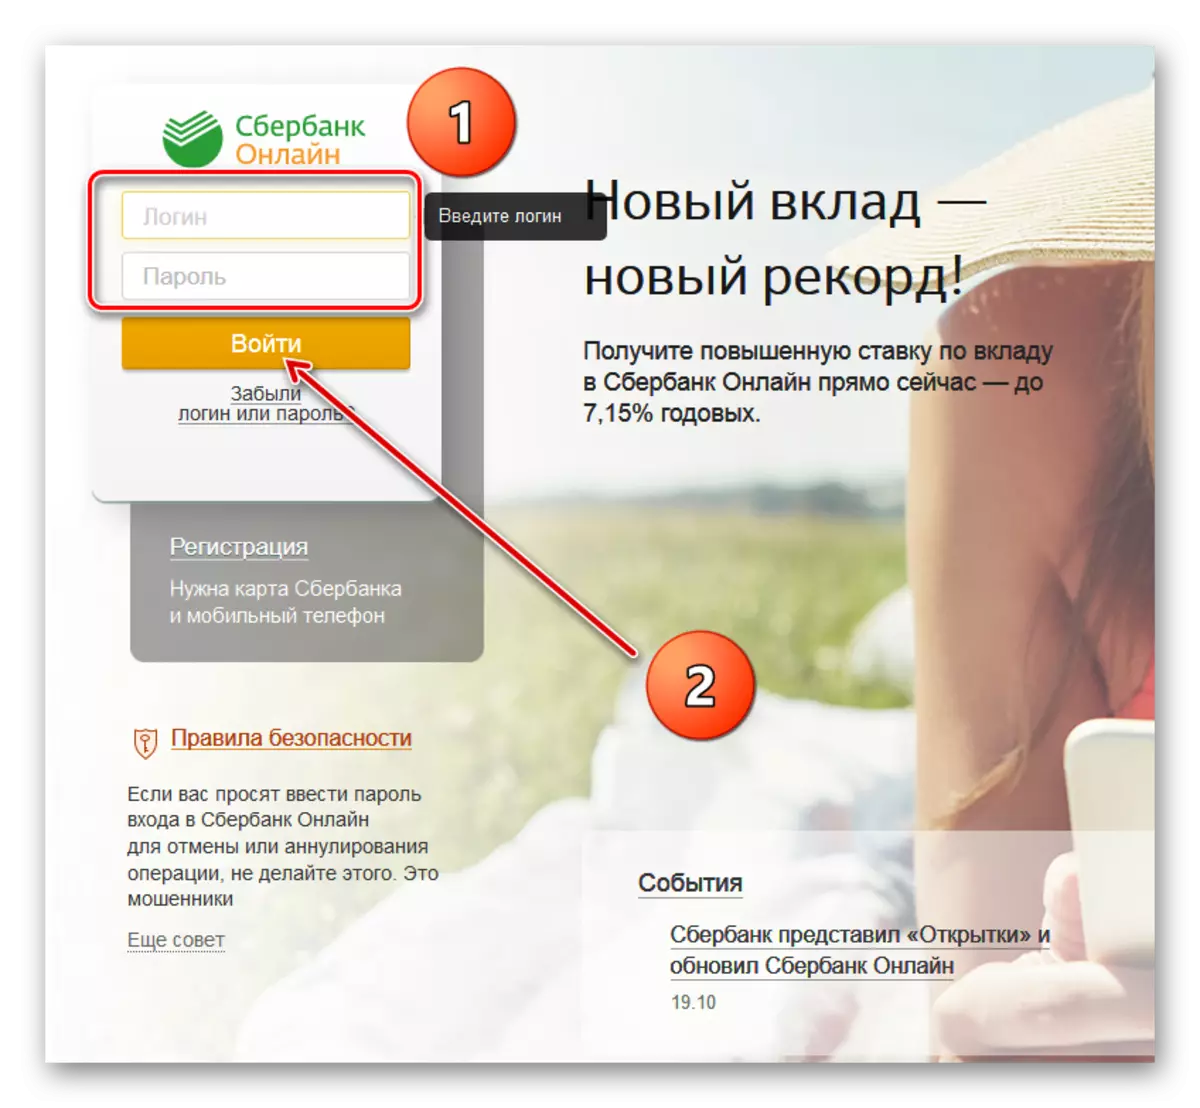 เข้าสู่ระบบ Sberbank ออนไลน์